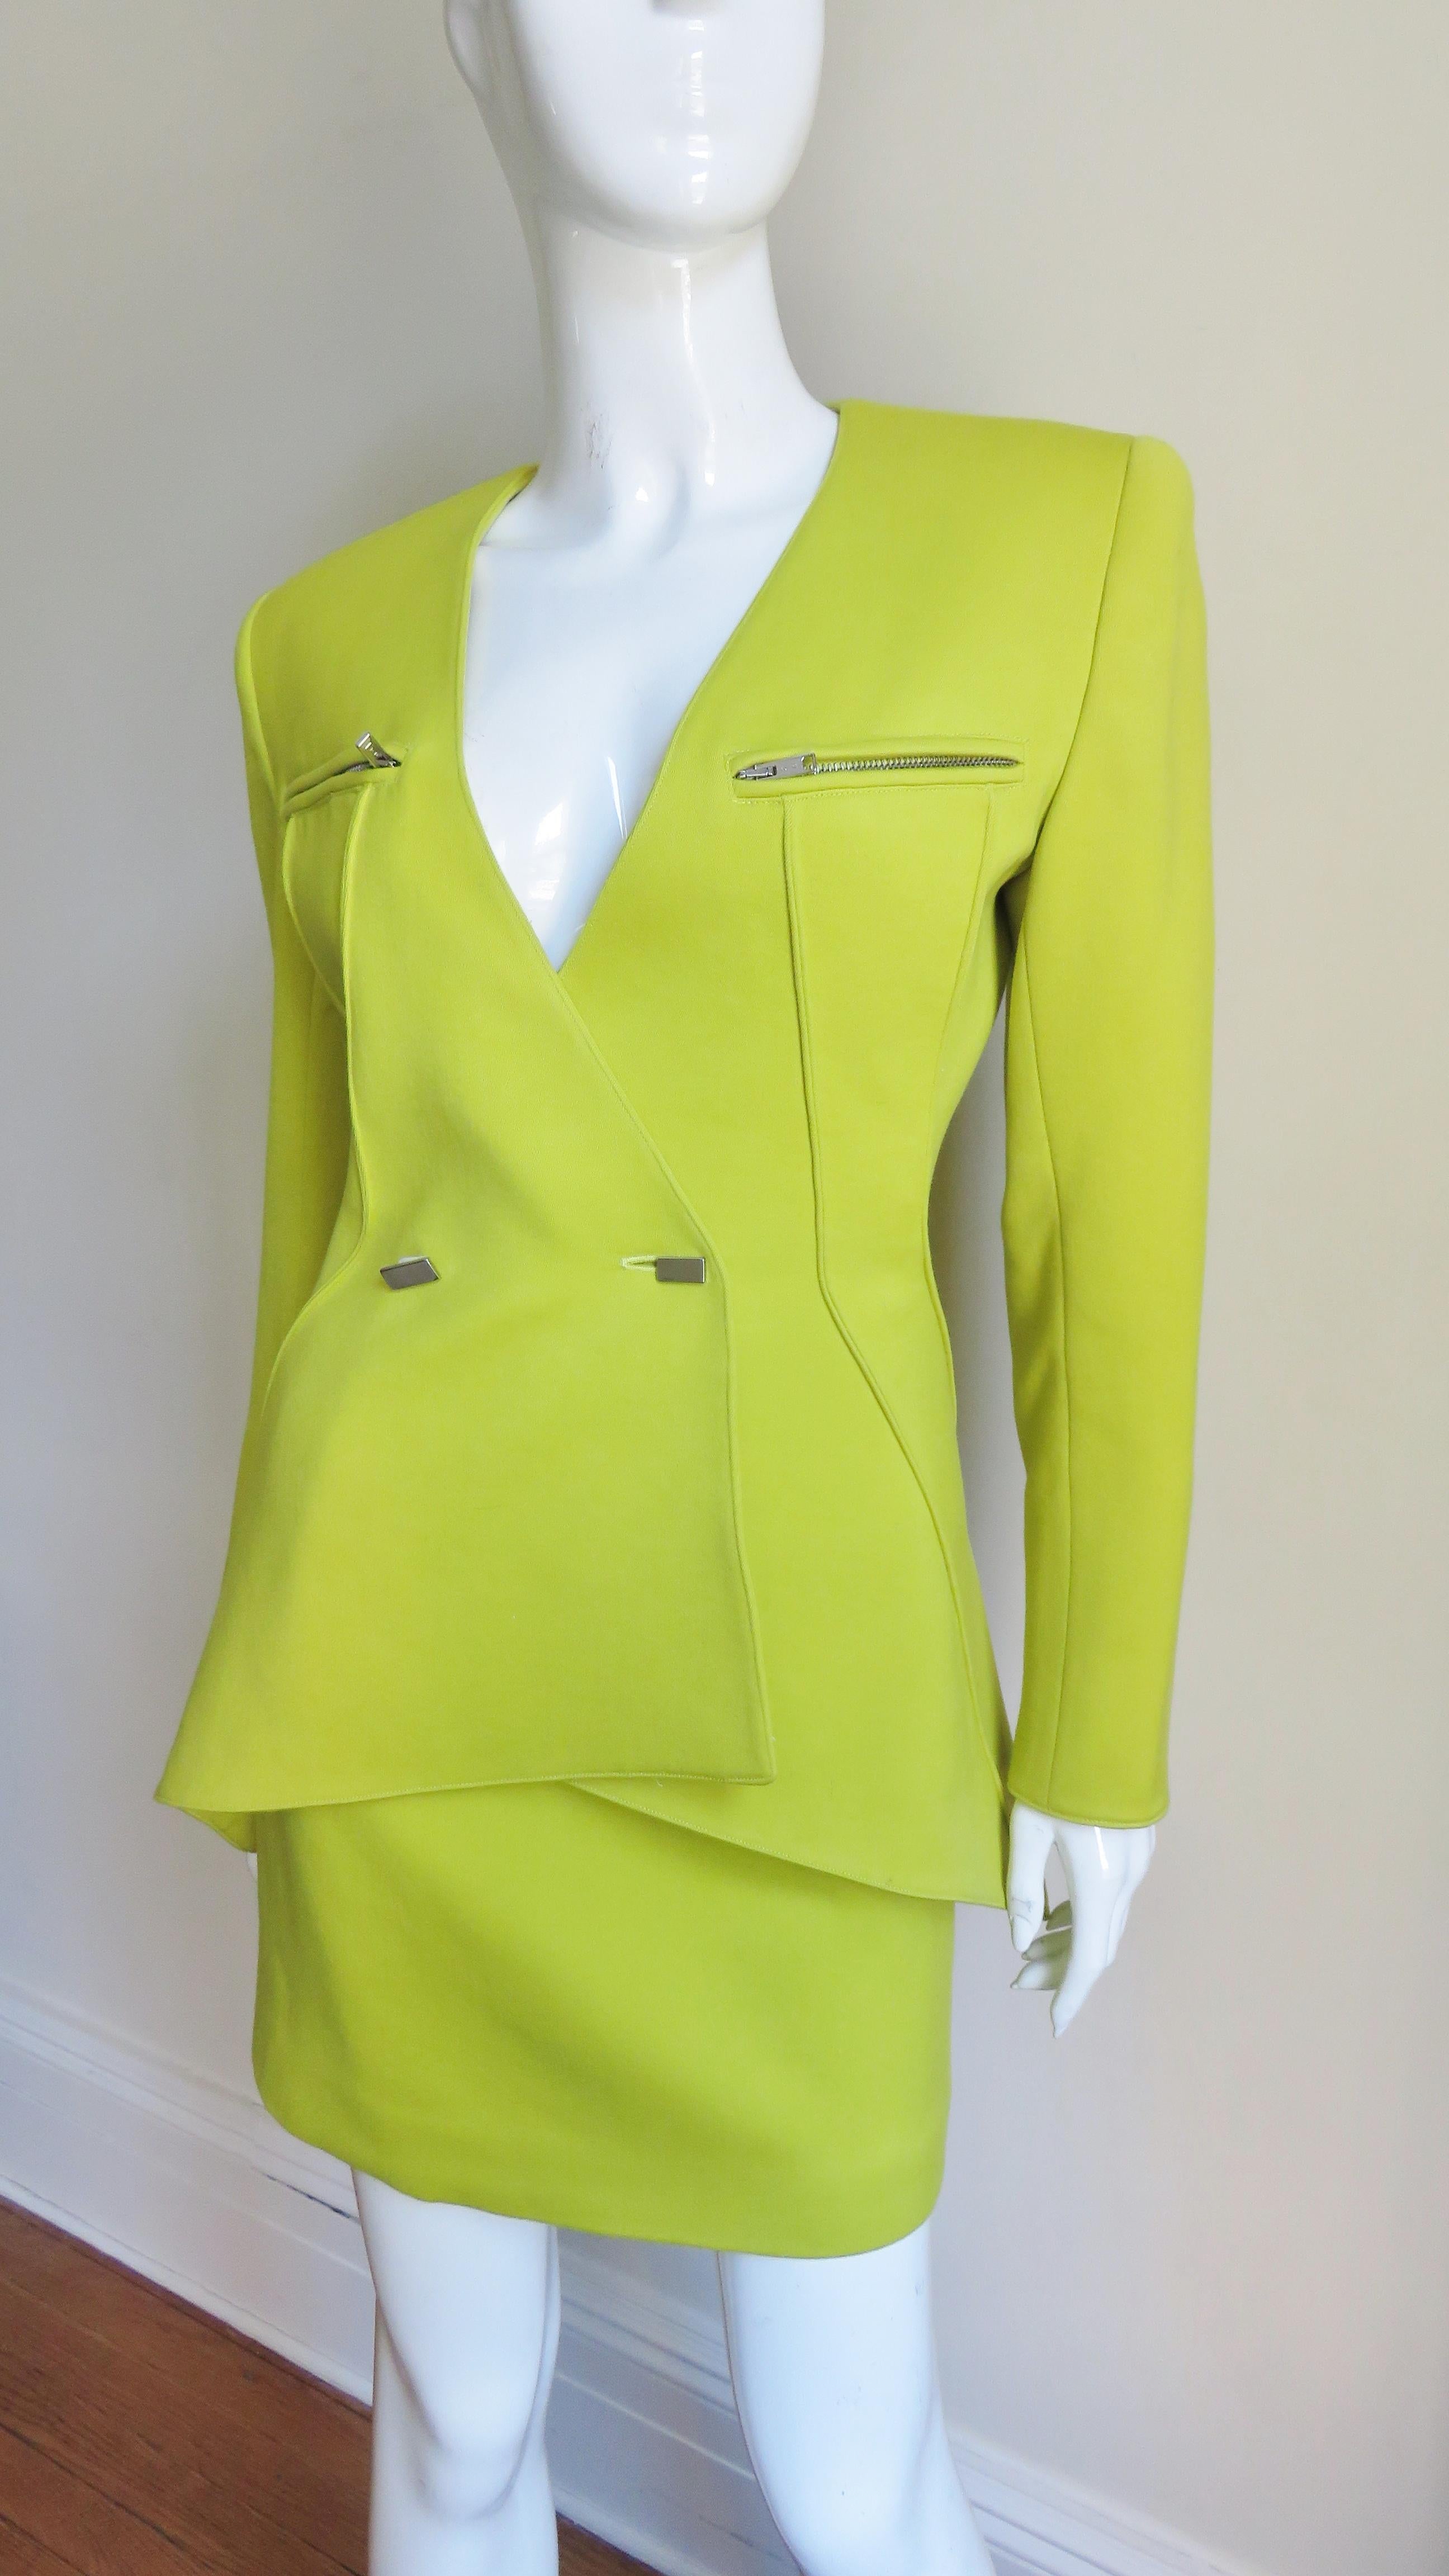 Une magnifique jupe et une veste en laine jaune fluo verte de Claude Montana. La veste présente des coutures verticales en angle qui enveloppent la taille jusqu'à l'ourlet du dos, qui est légèrement évasé. Il se ferme à double boutonnage par des